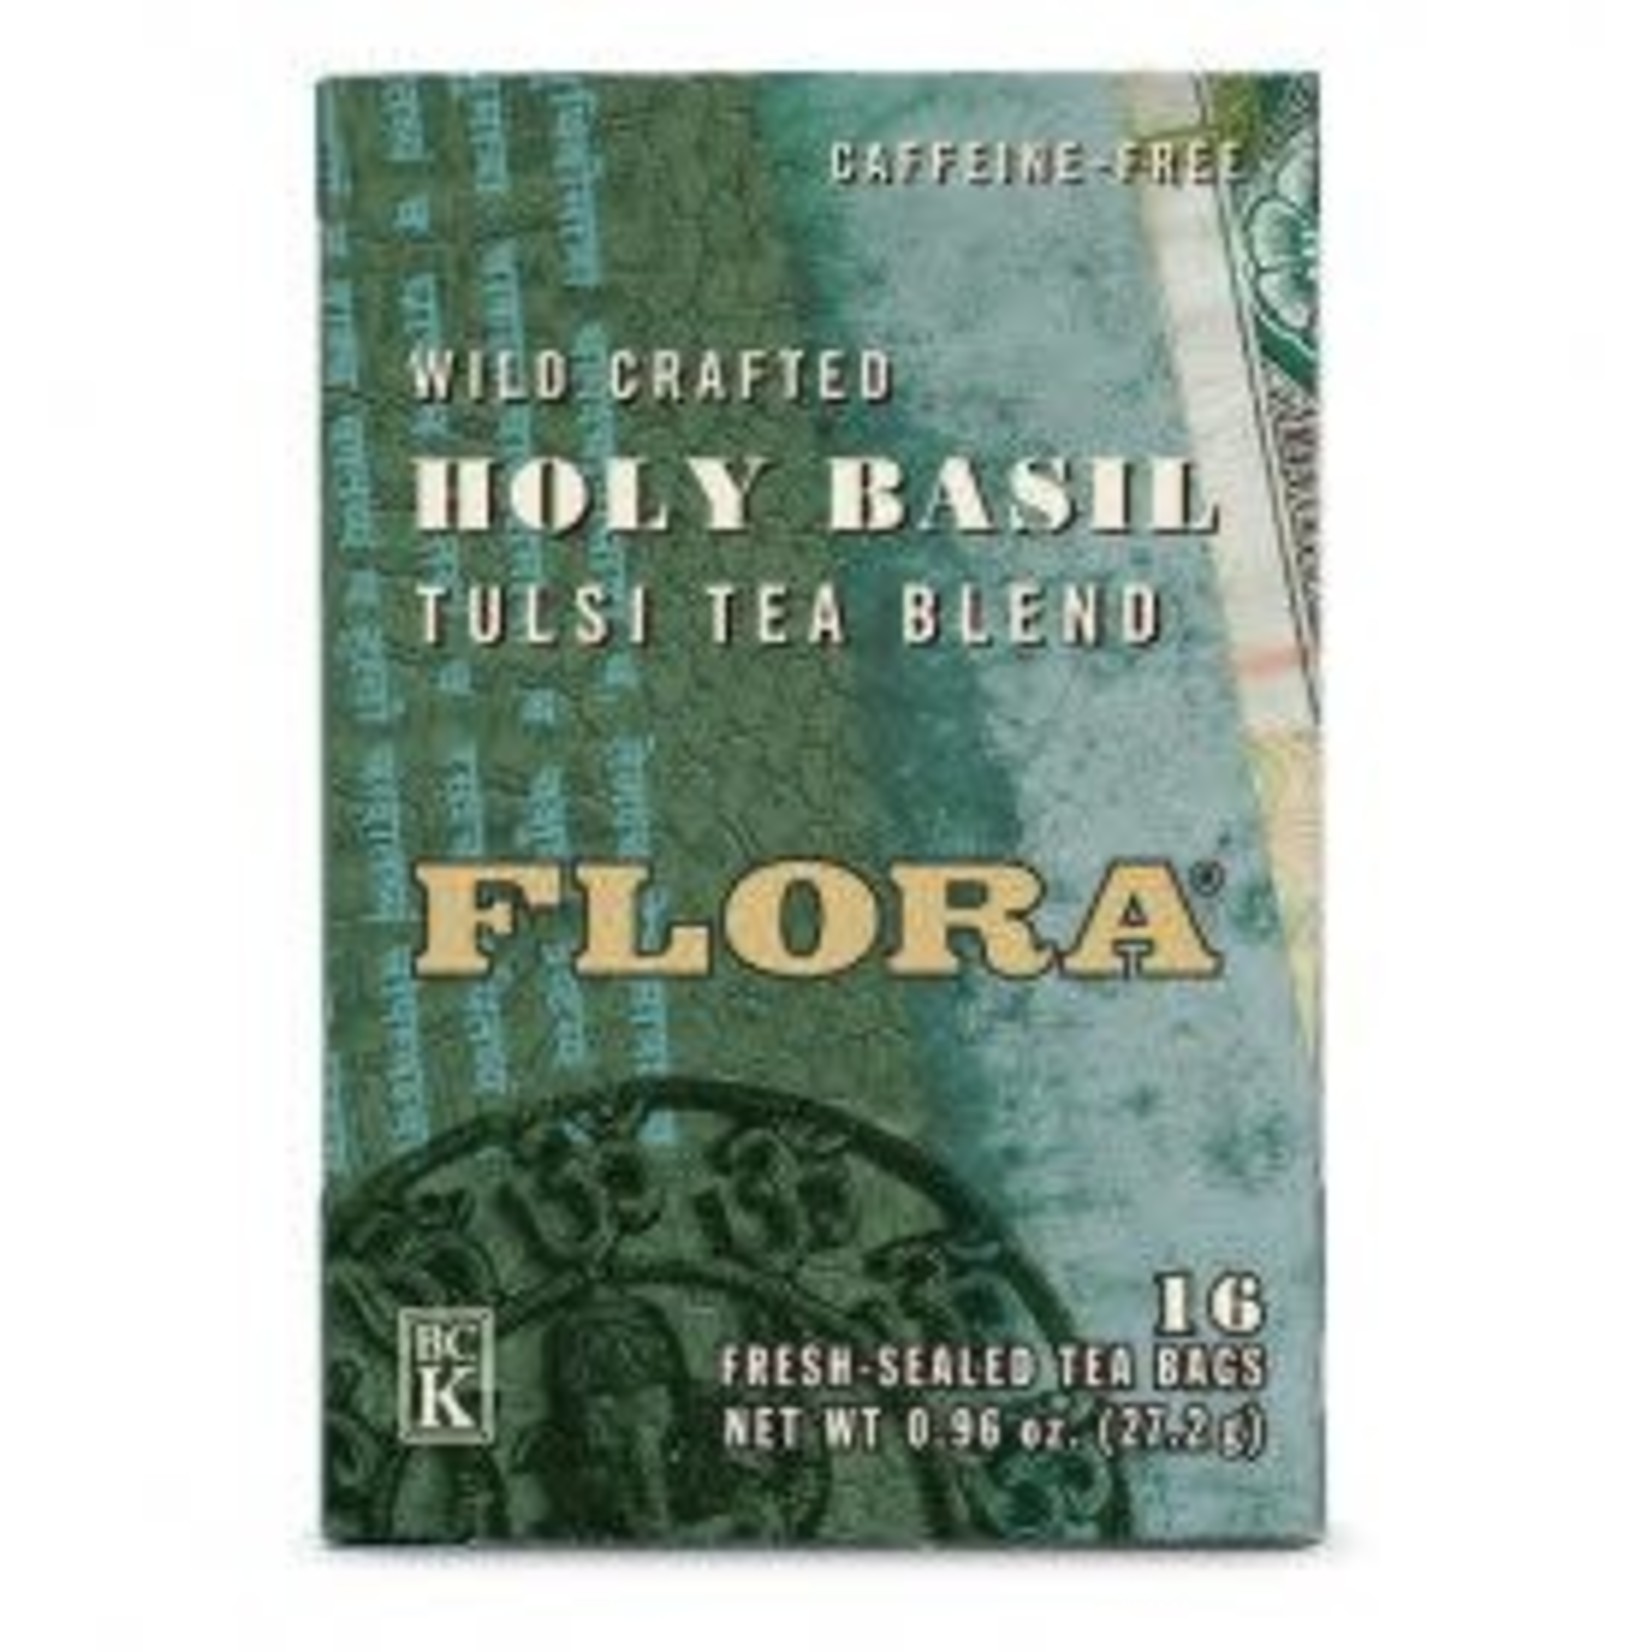 FLORA FLORA HOLY BASIL TEA 16 BAGS